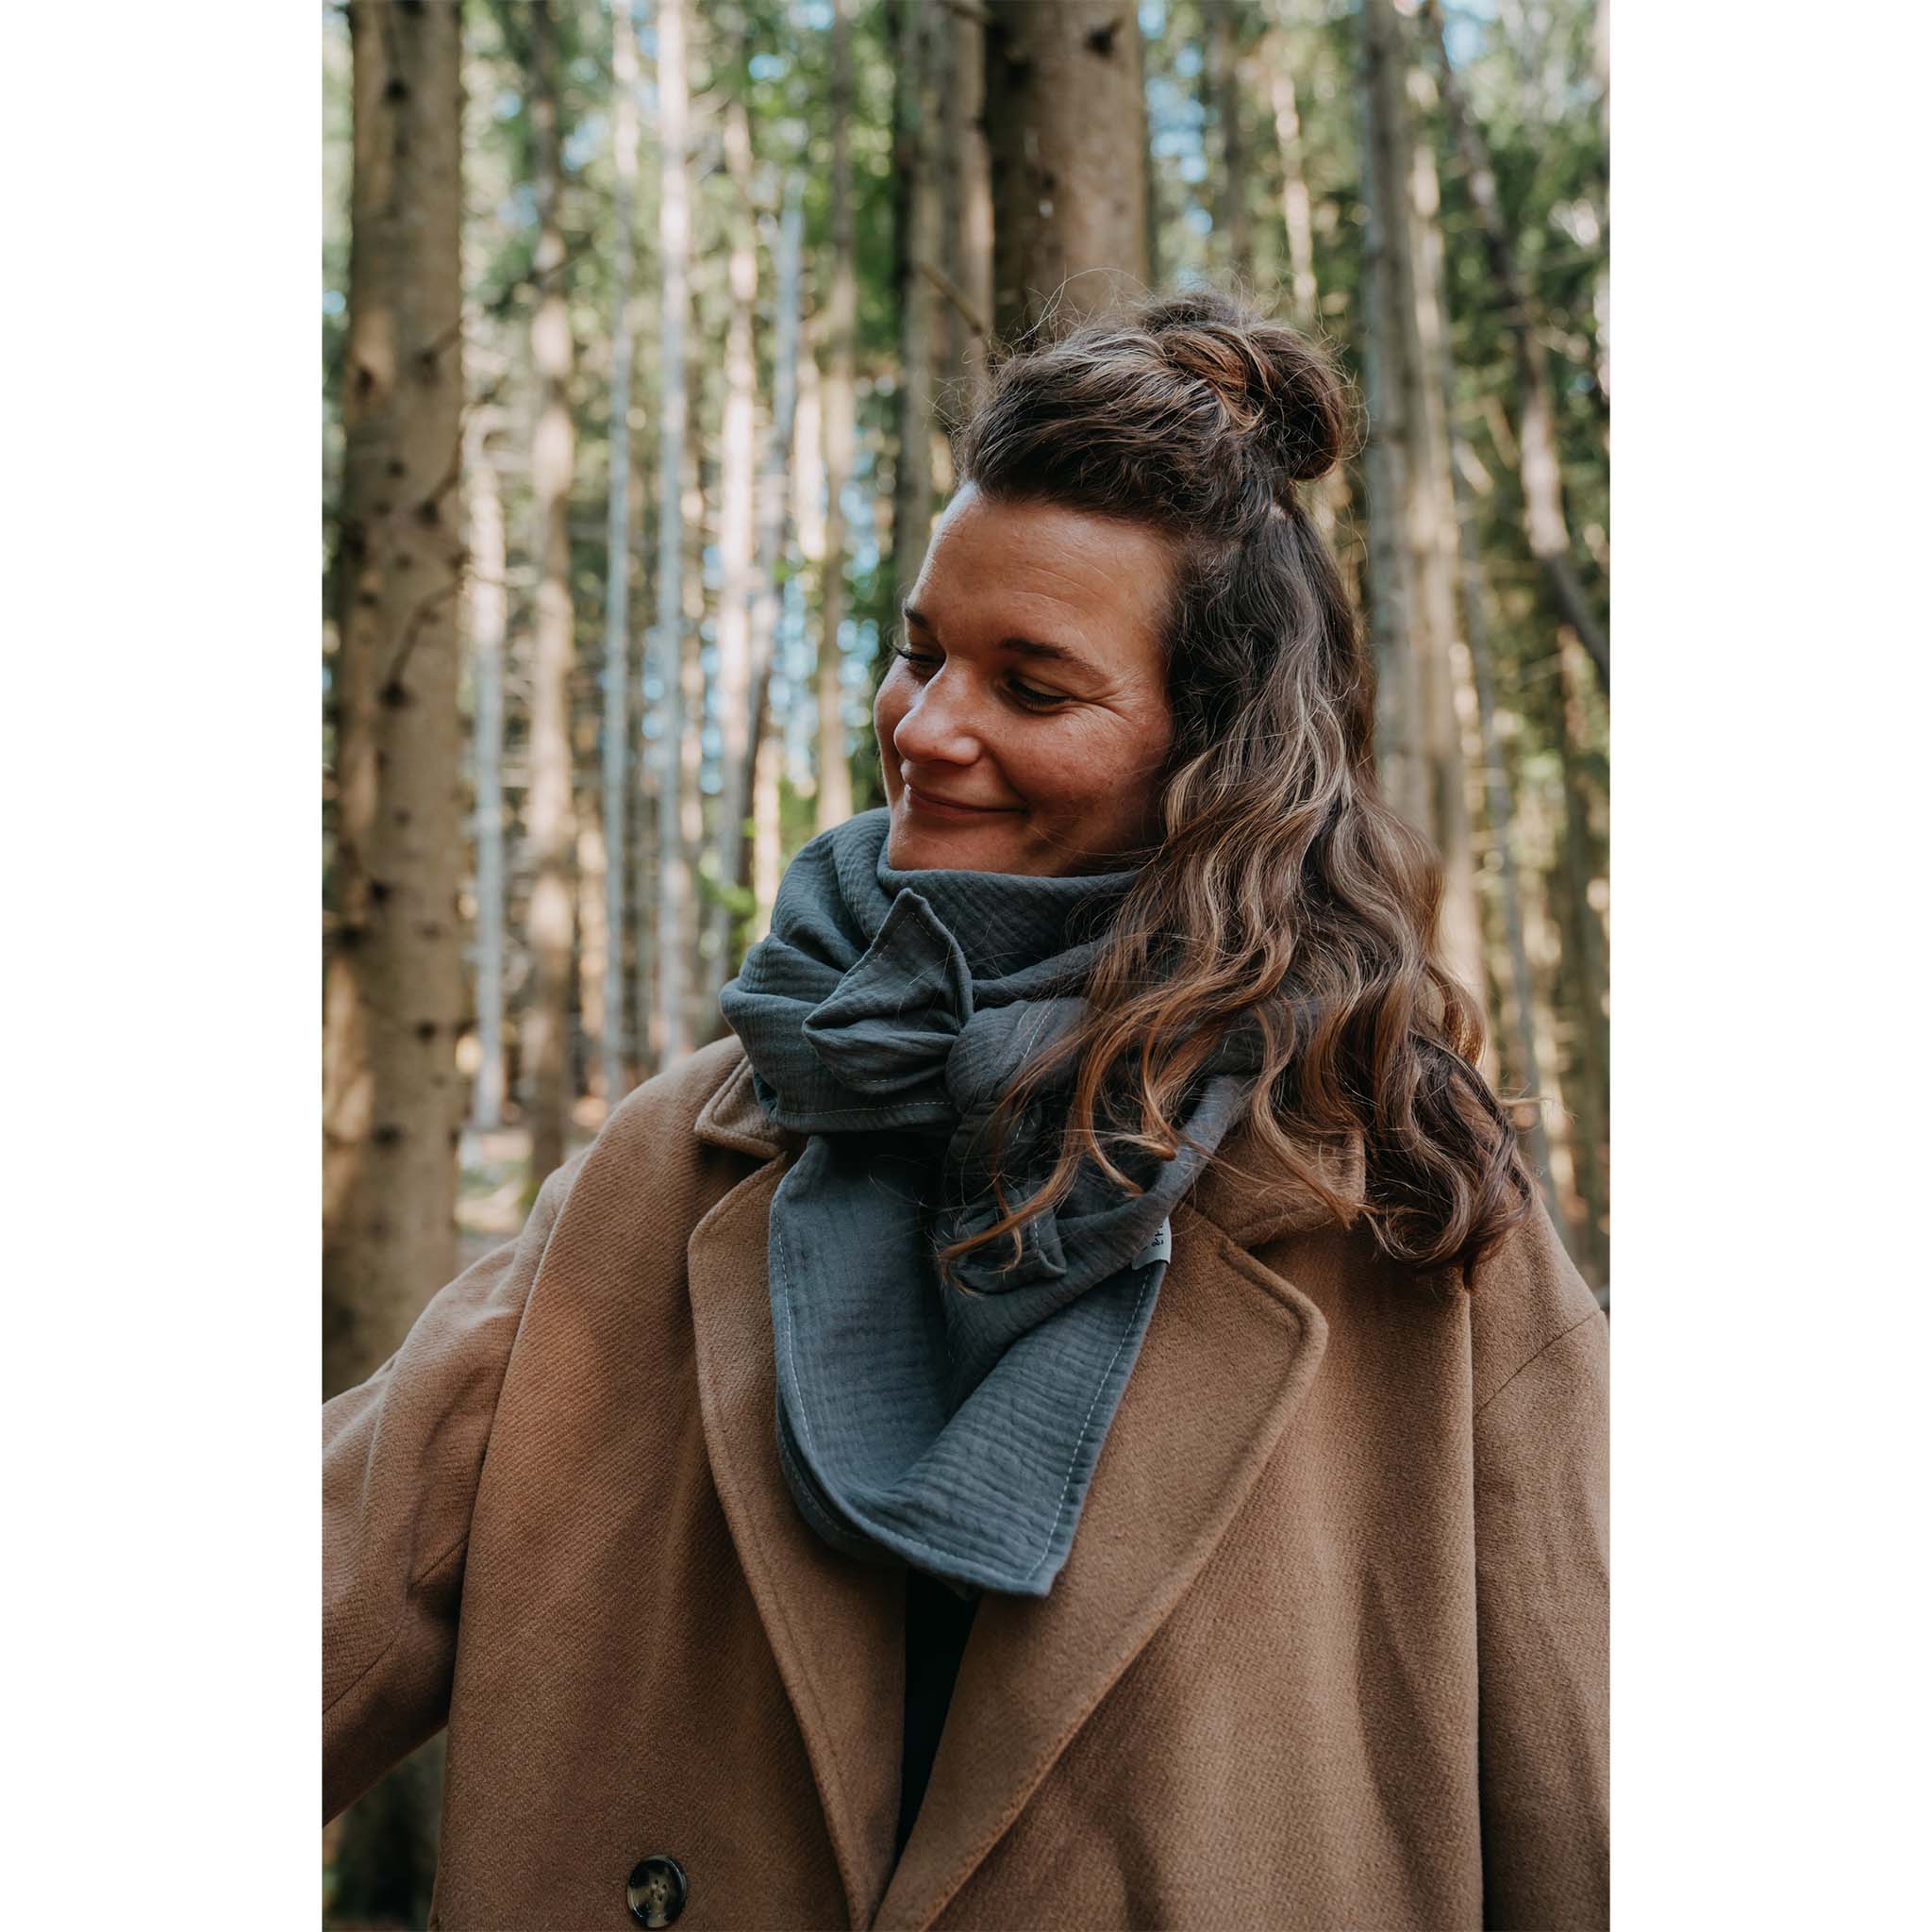 Musselin-Halstuch in der Farbe Anthrazit Tragebild Frau im Wald